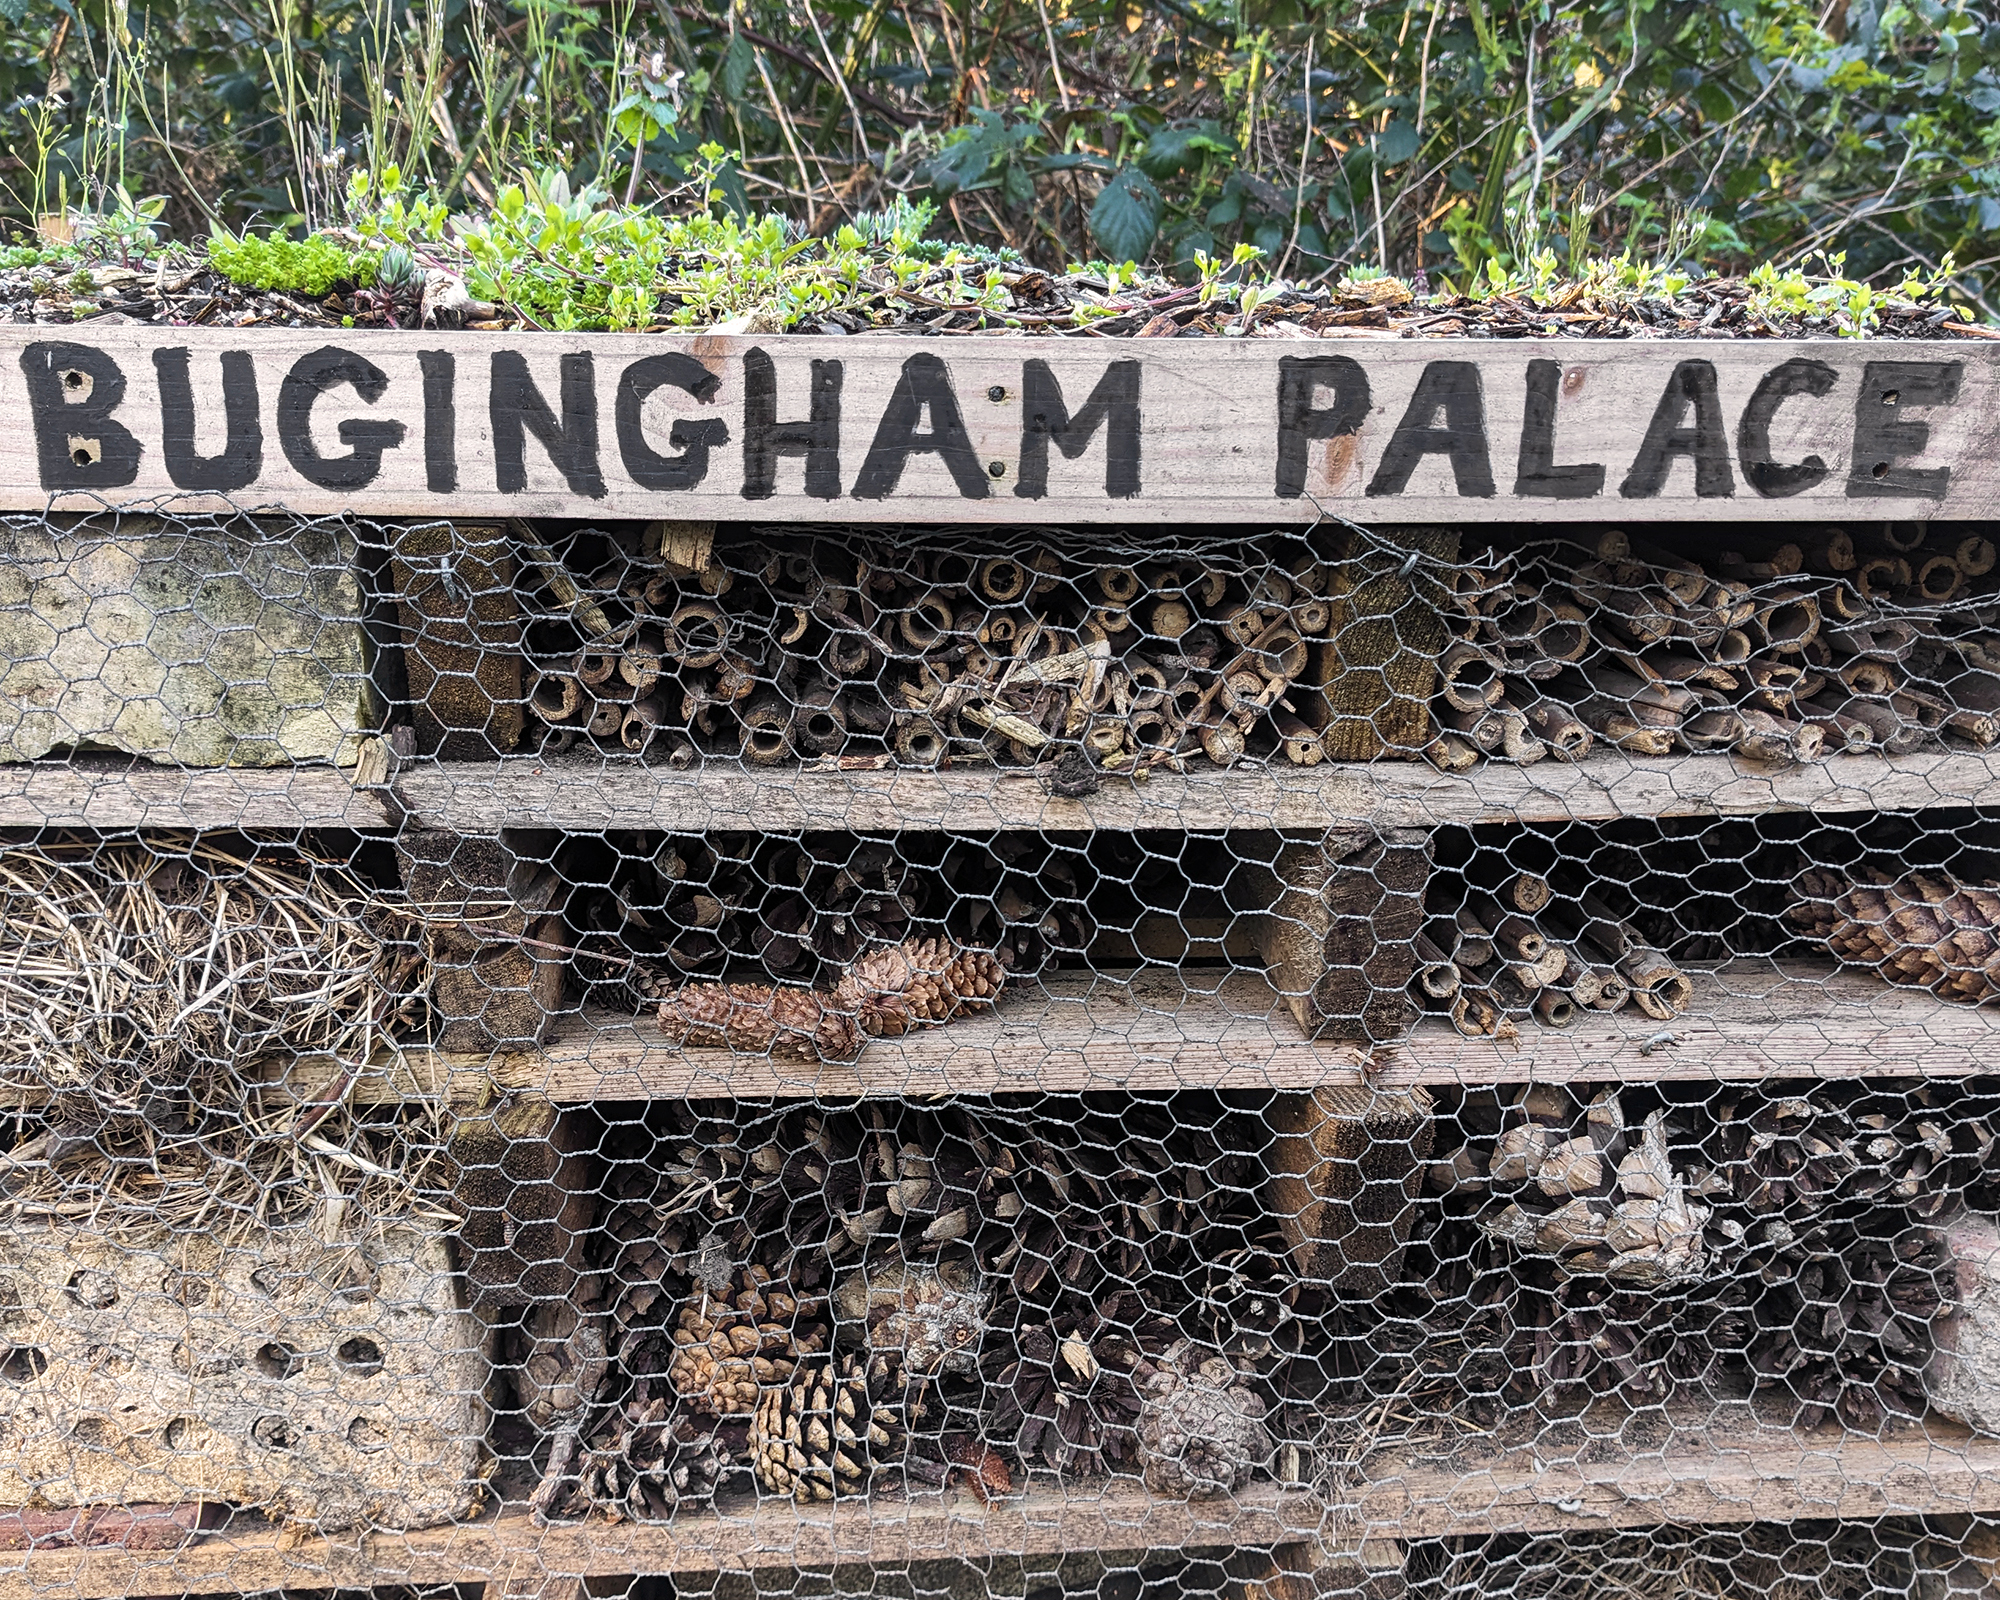 Bug hotel called Bugingham Palace